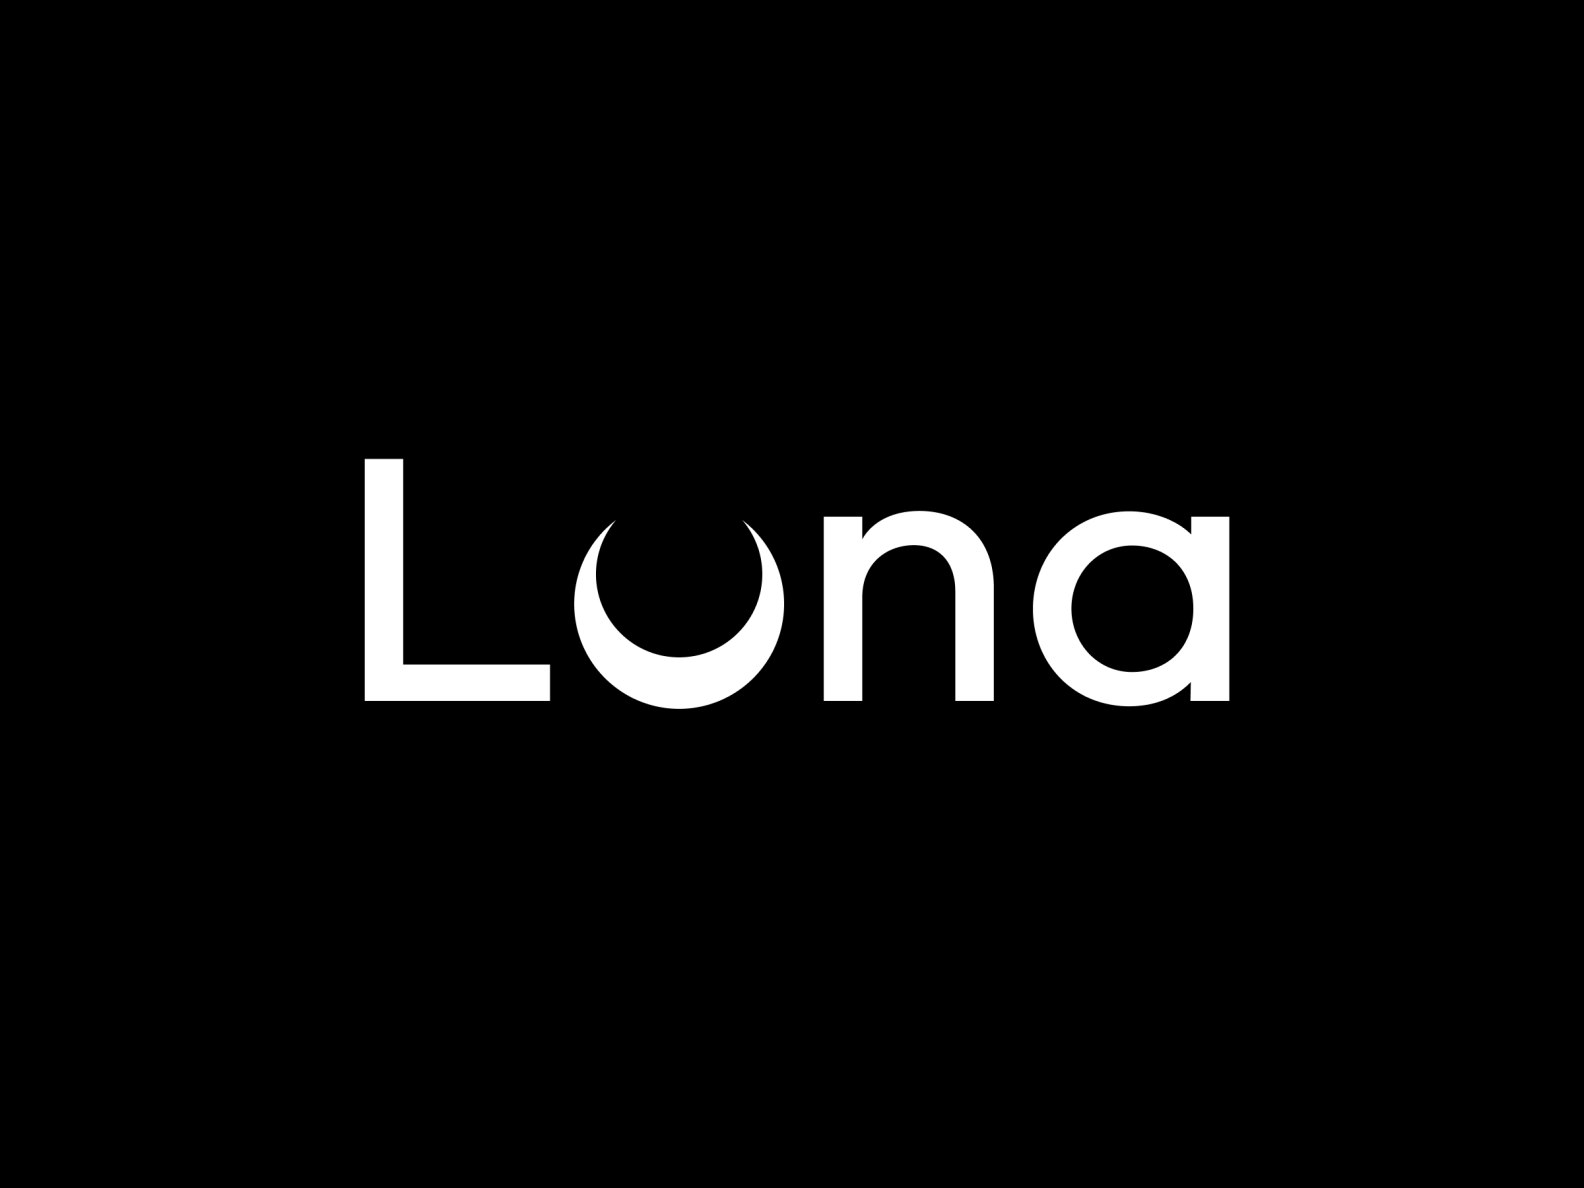 Luna Logotype by Nastya Mironova on Dribbble